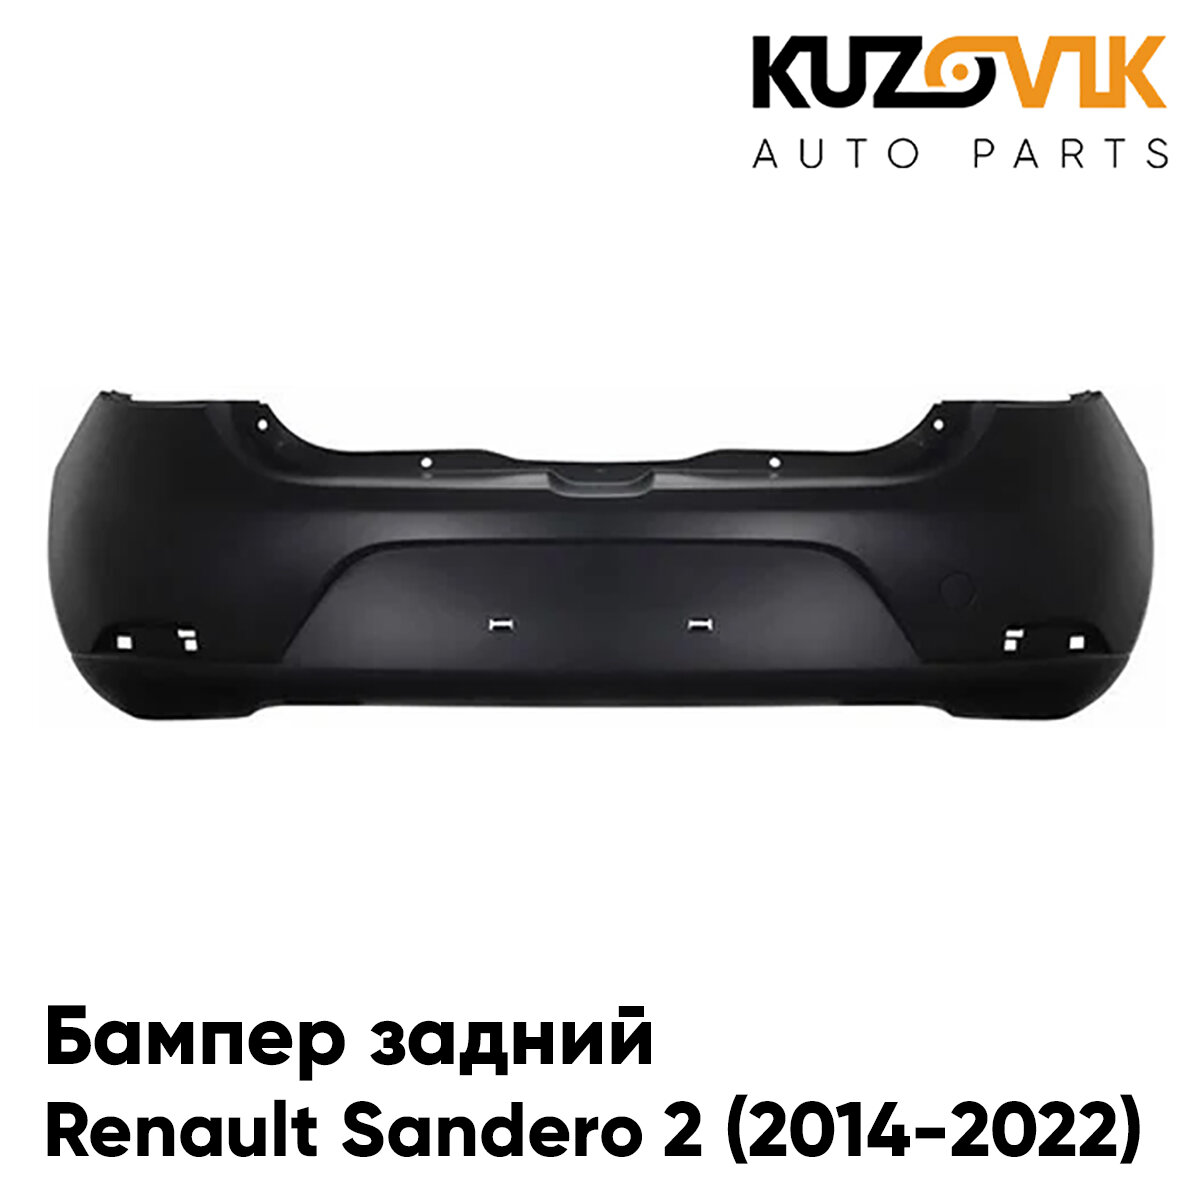 Бампер задний для Рено Сандеро Renault Sandero 2 (2014-2022)